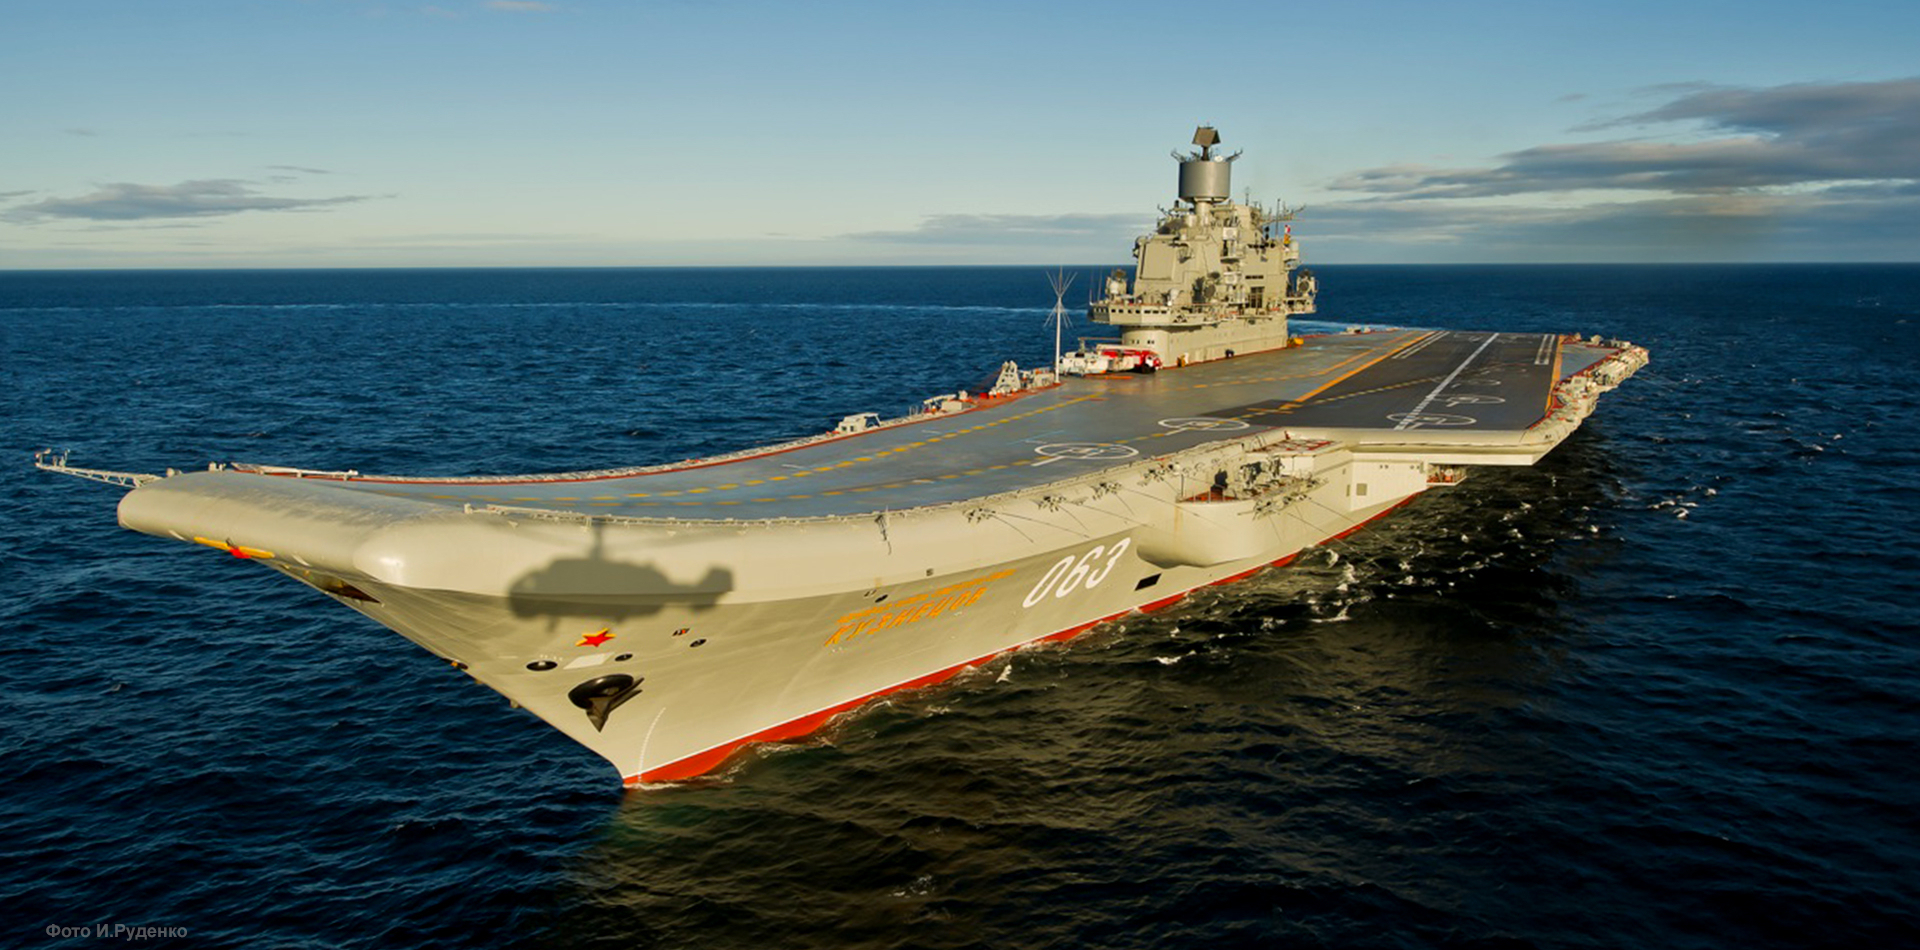 Ndege anotakura "Admiral Kuznetsov"